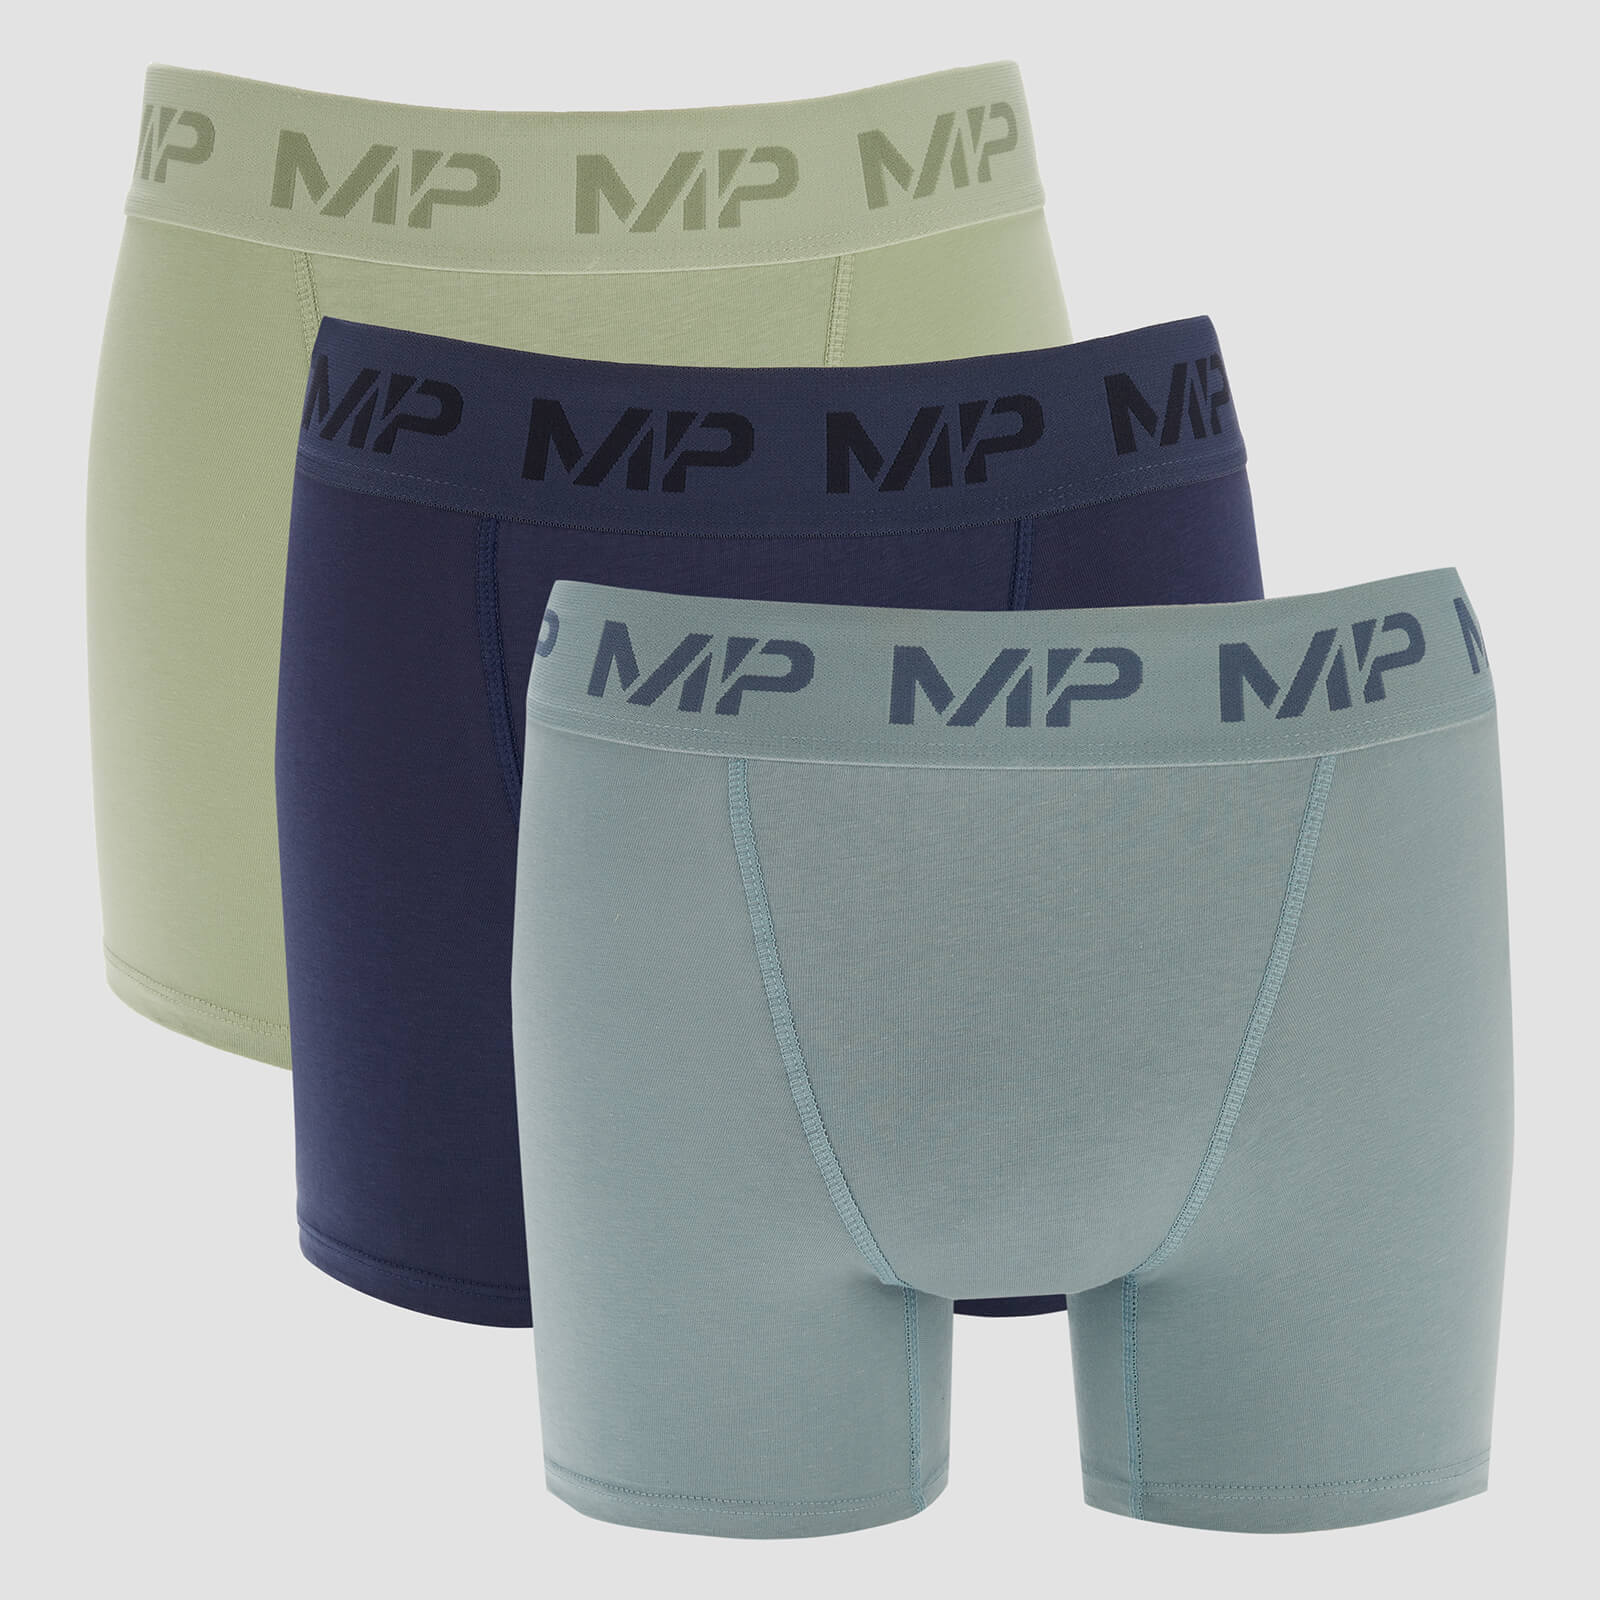 Quần lót Boxer dành cho Nam giới của MP (3 Cái) - Màu xanh lá lạnh/Màu xanh thép/Màu xanh đá